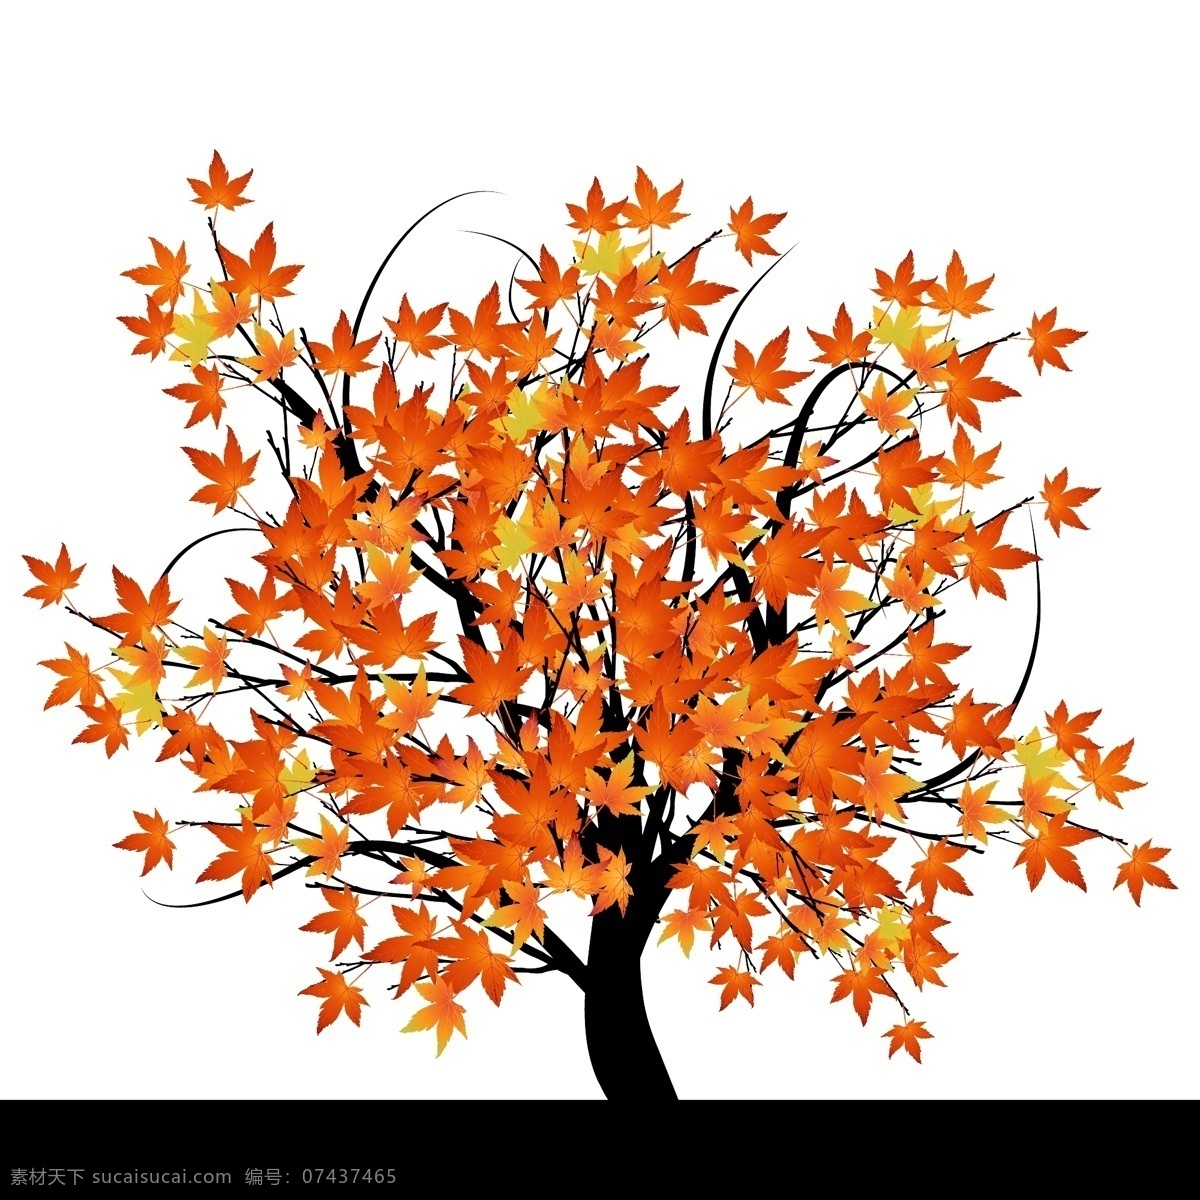 矢量 舞动 的卡 通 枫树 卡通枫树 卡通树 抽象树 红叶 手绘树 树叶 秋色 秋季 秋天 底纹边框 背景底纹